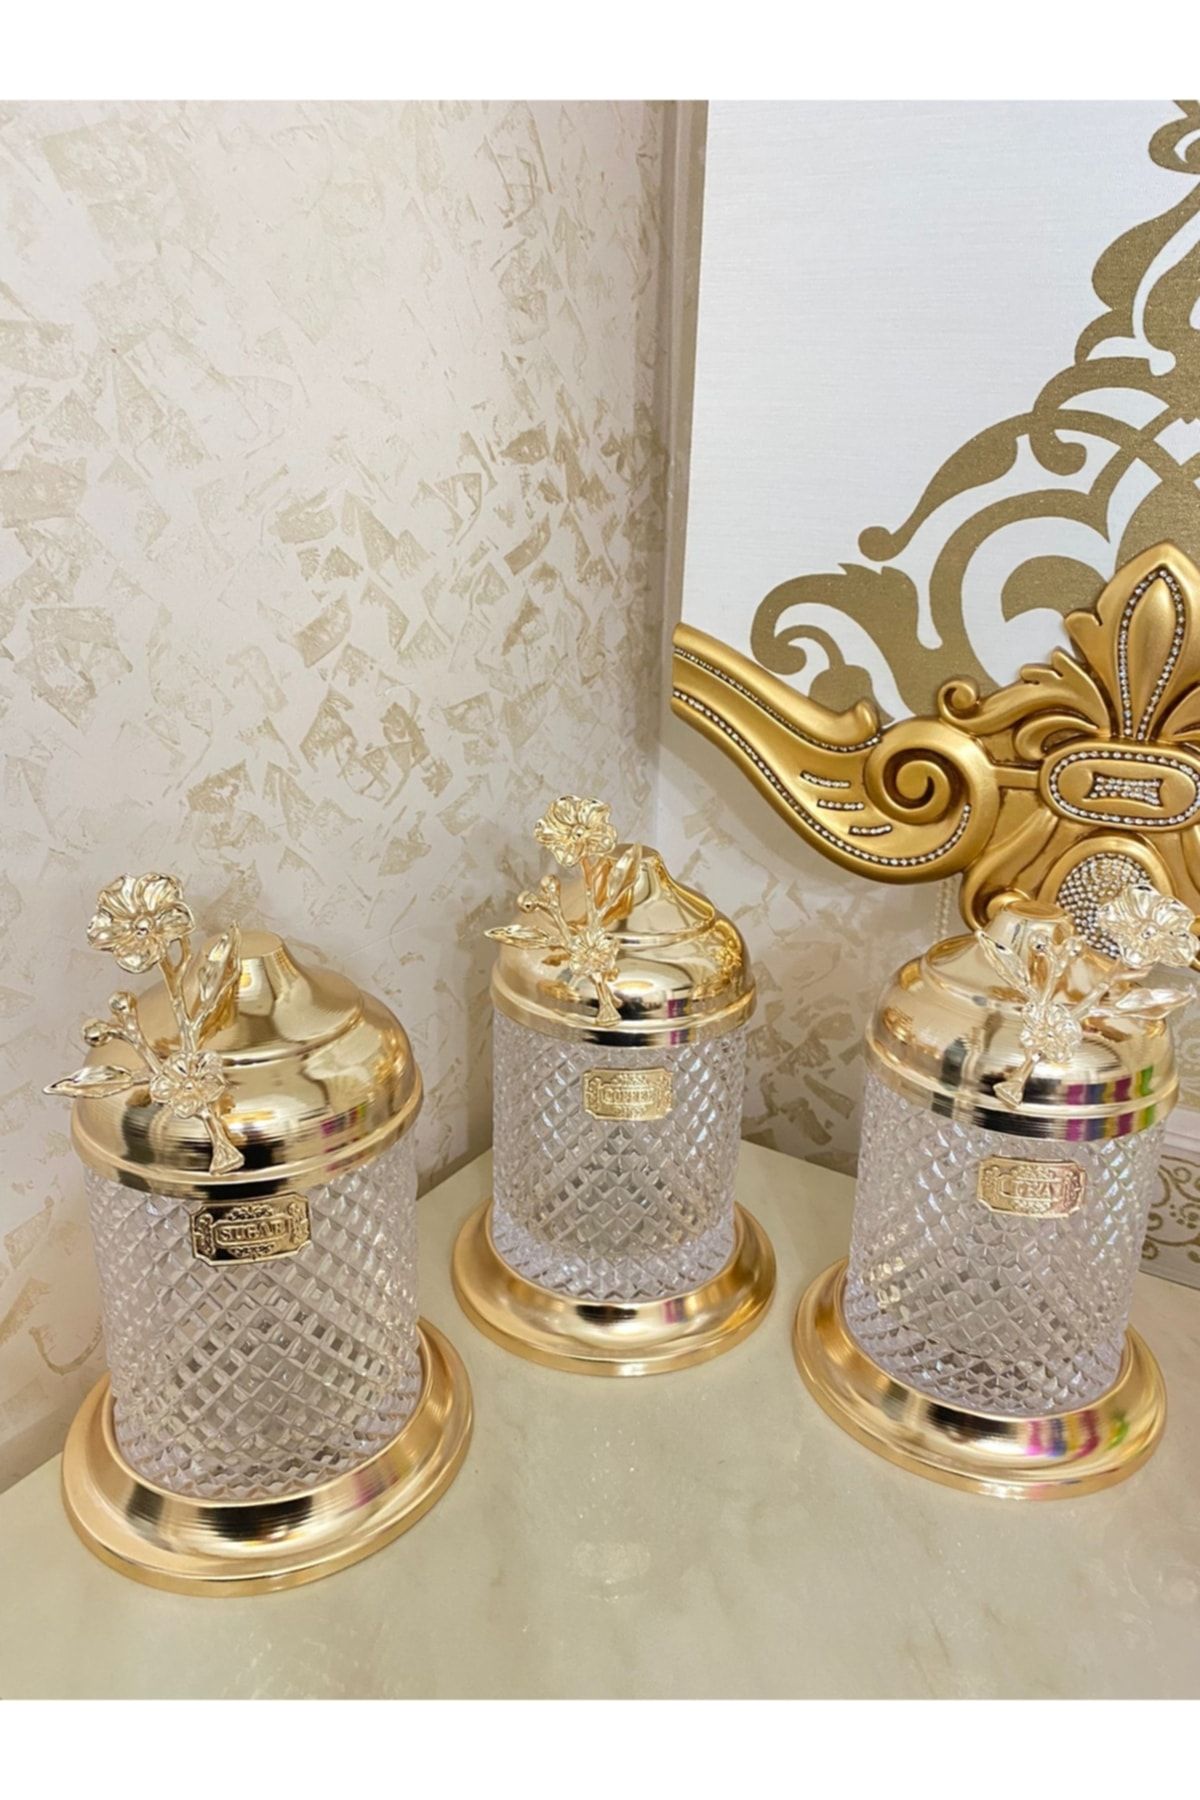 İmren Collection Lux Kristal Kavanoz Seti Japon Güllü Gold 3lü